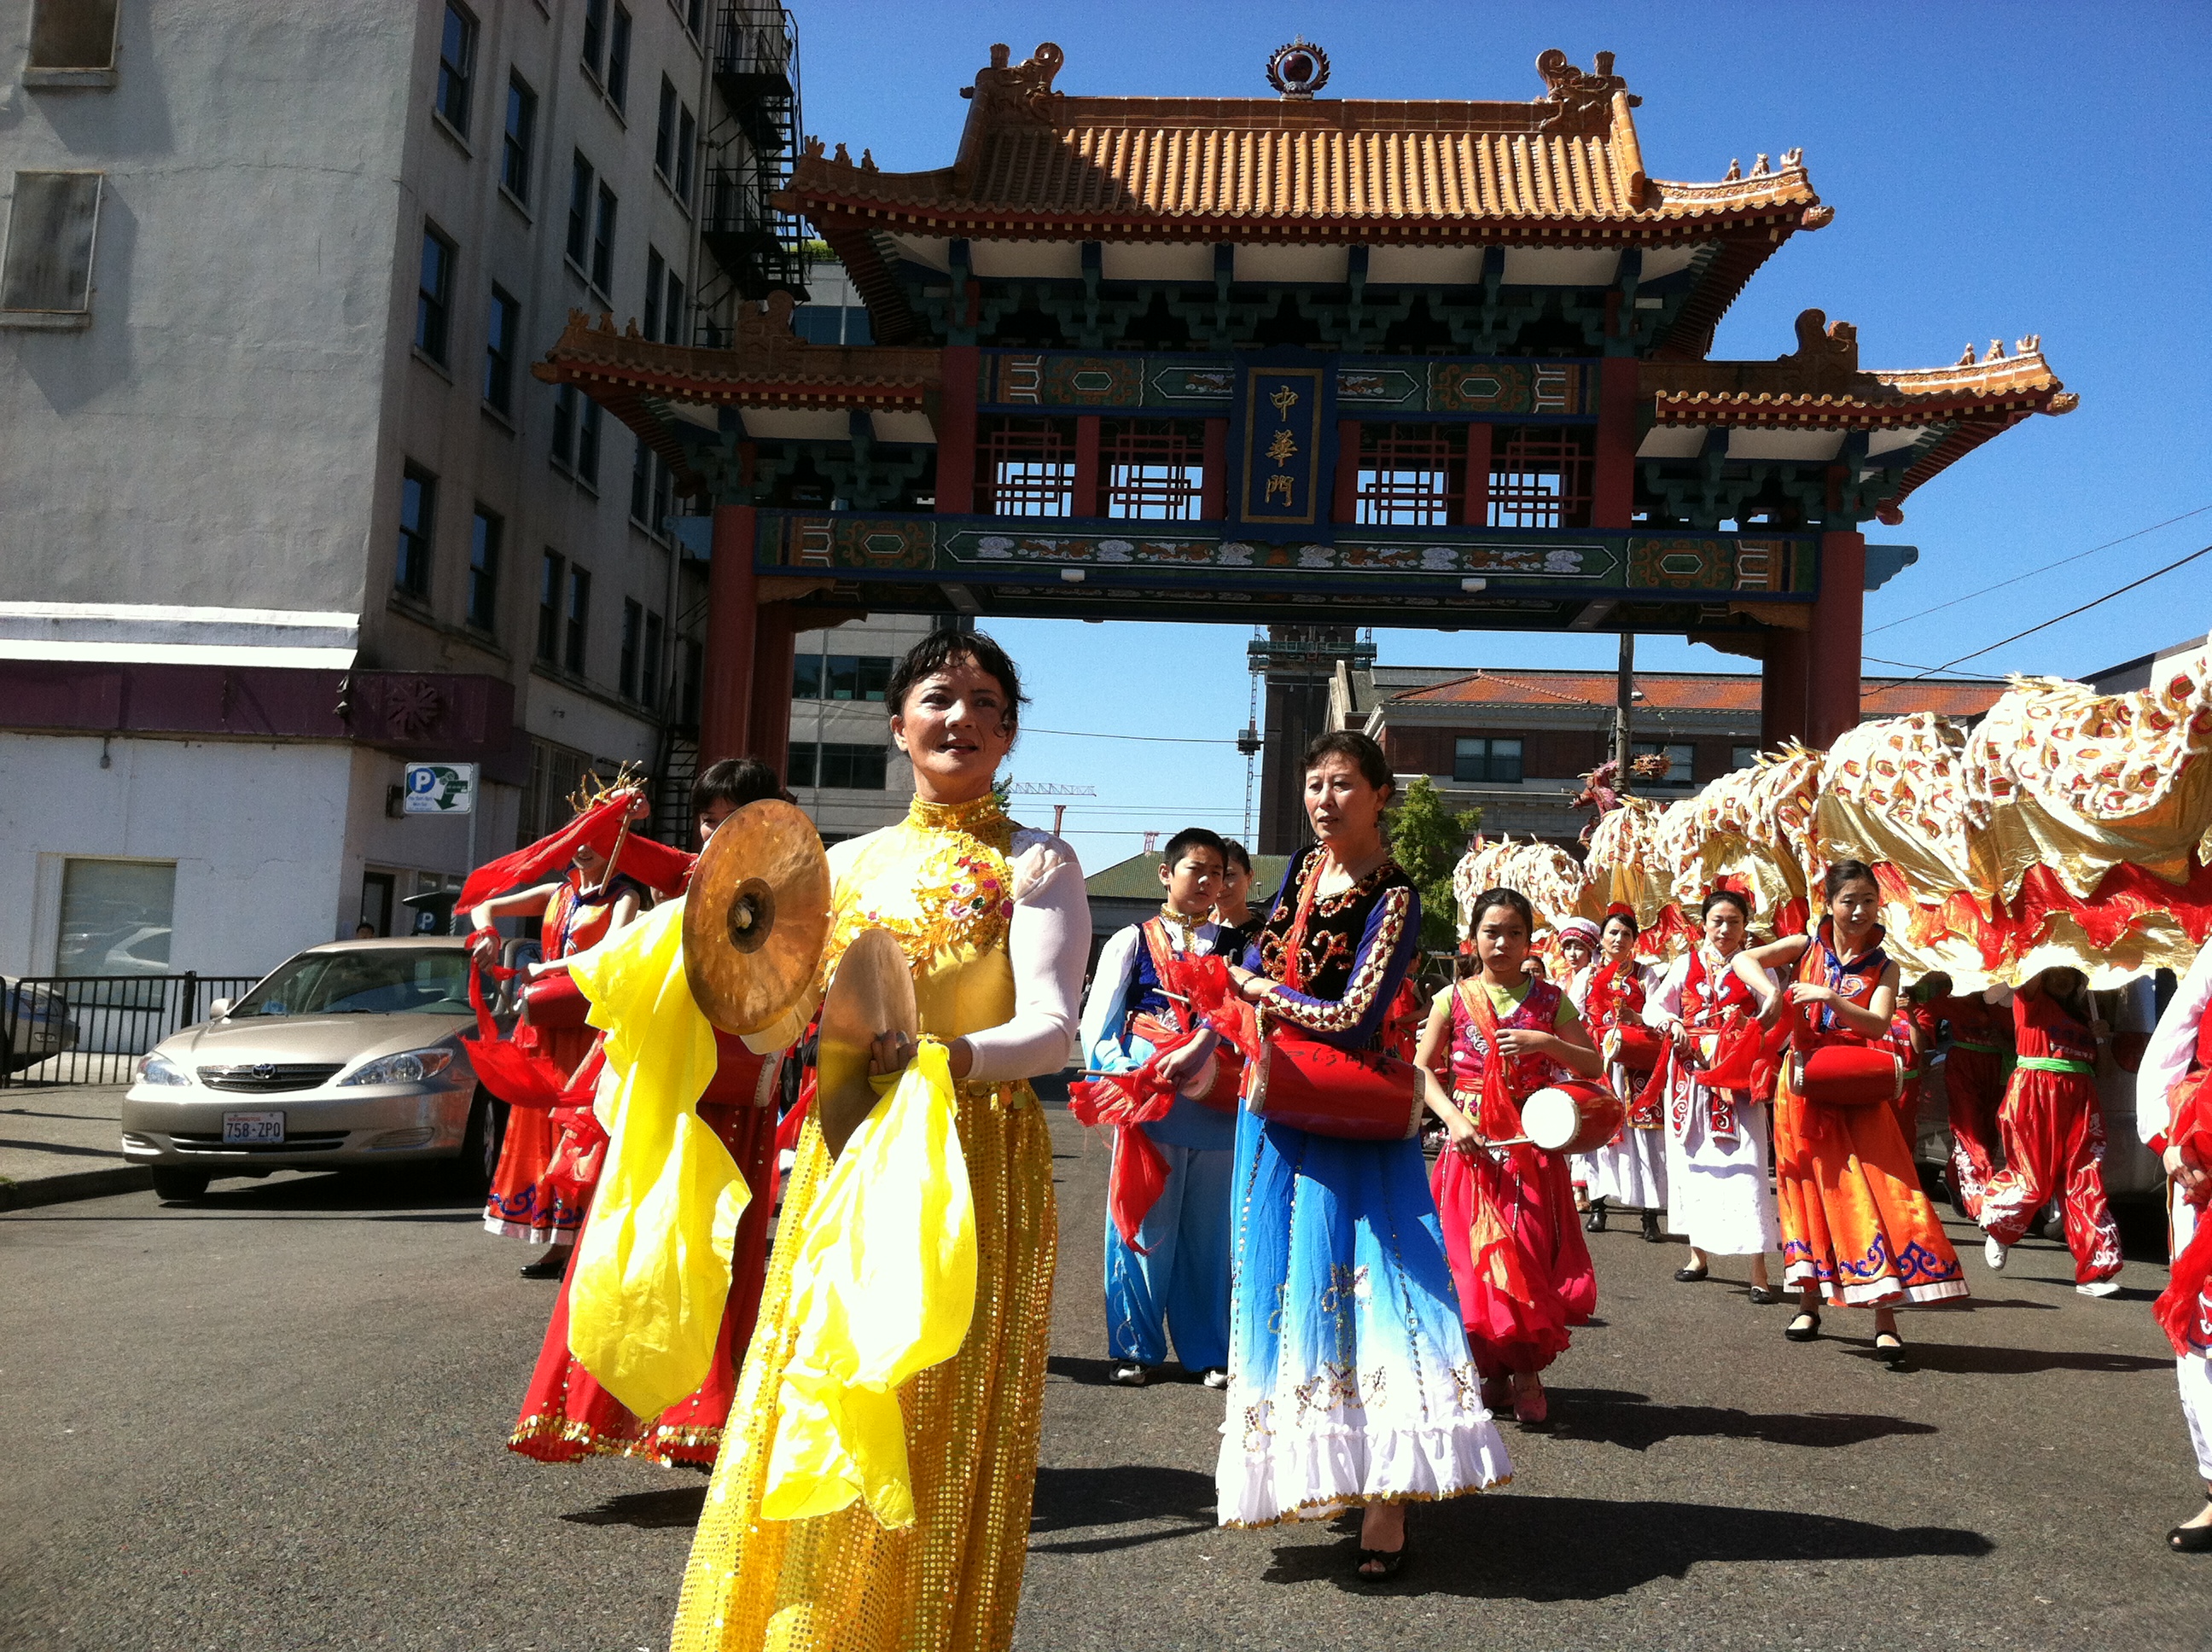 2012 Chinatown Seafair Parade Image 222